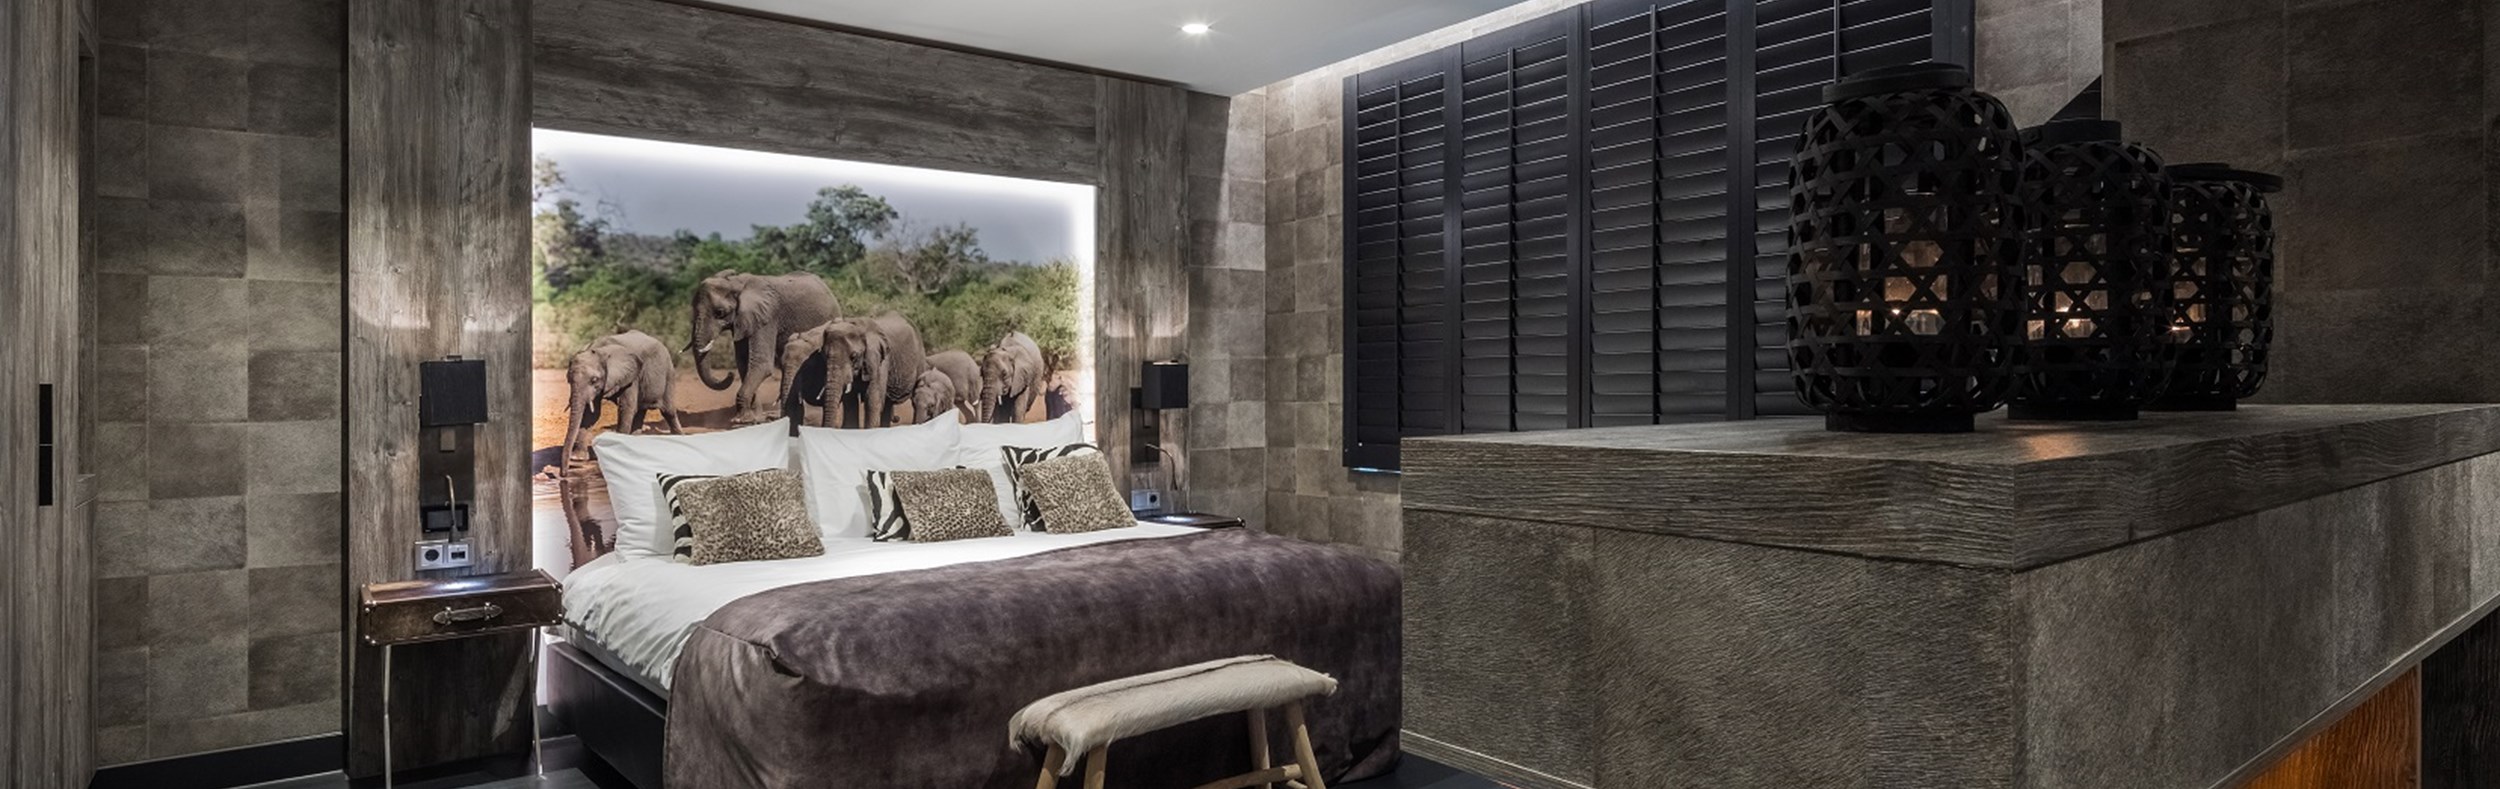 hotel safari suite